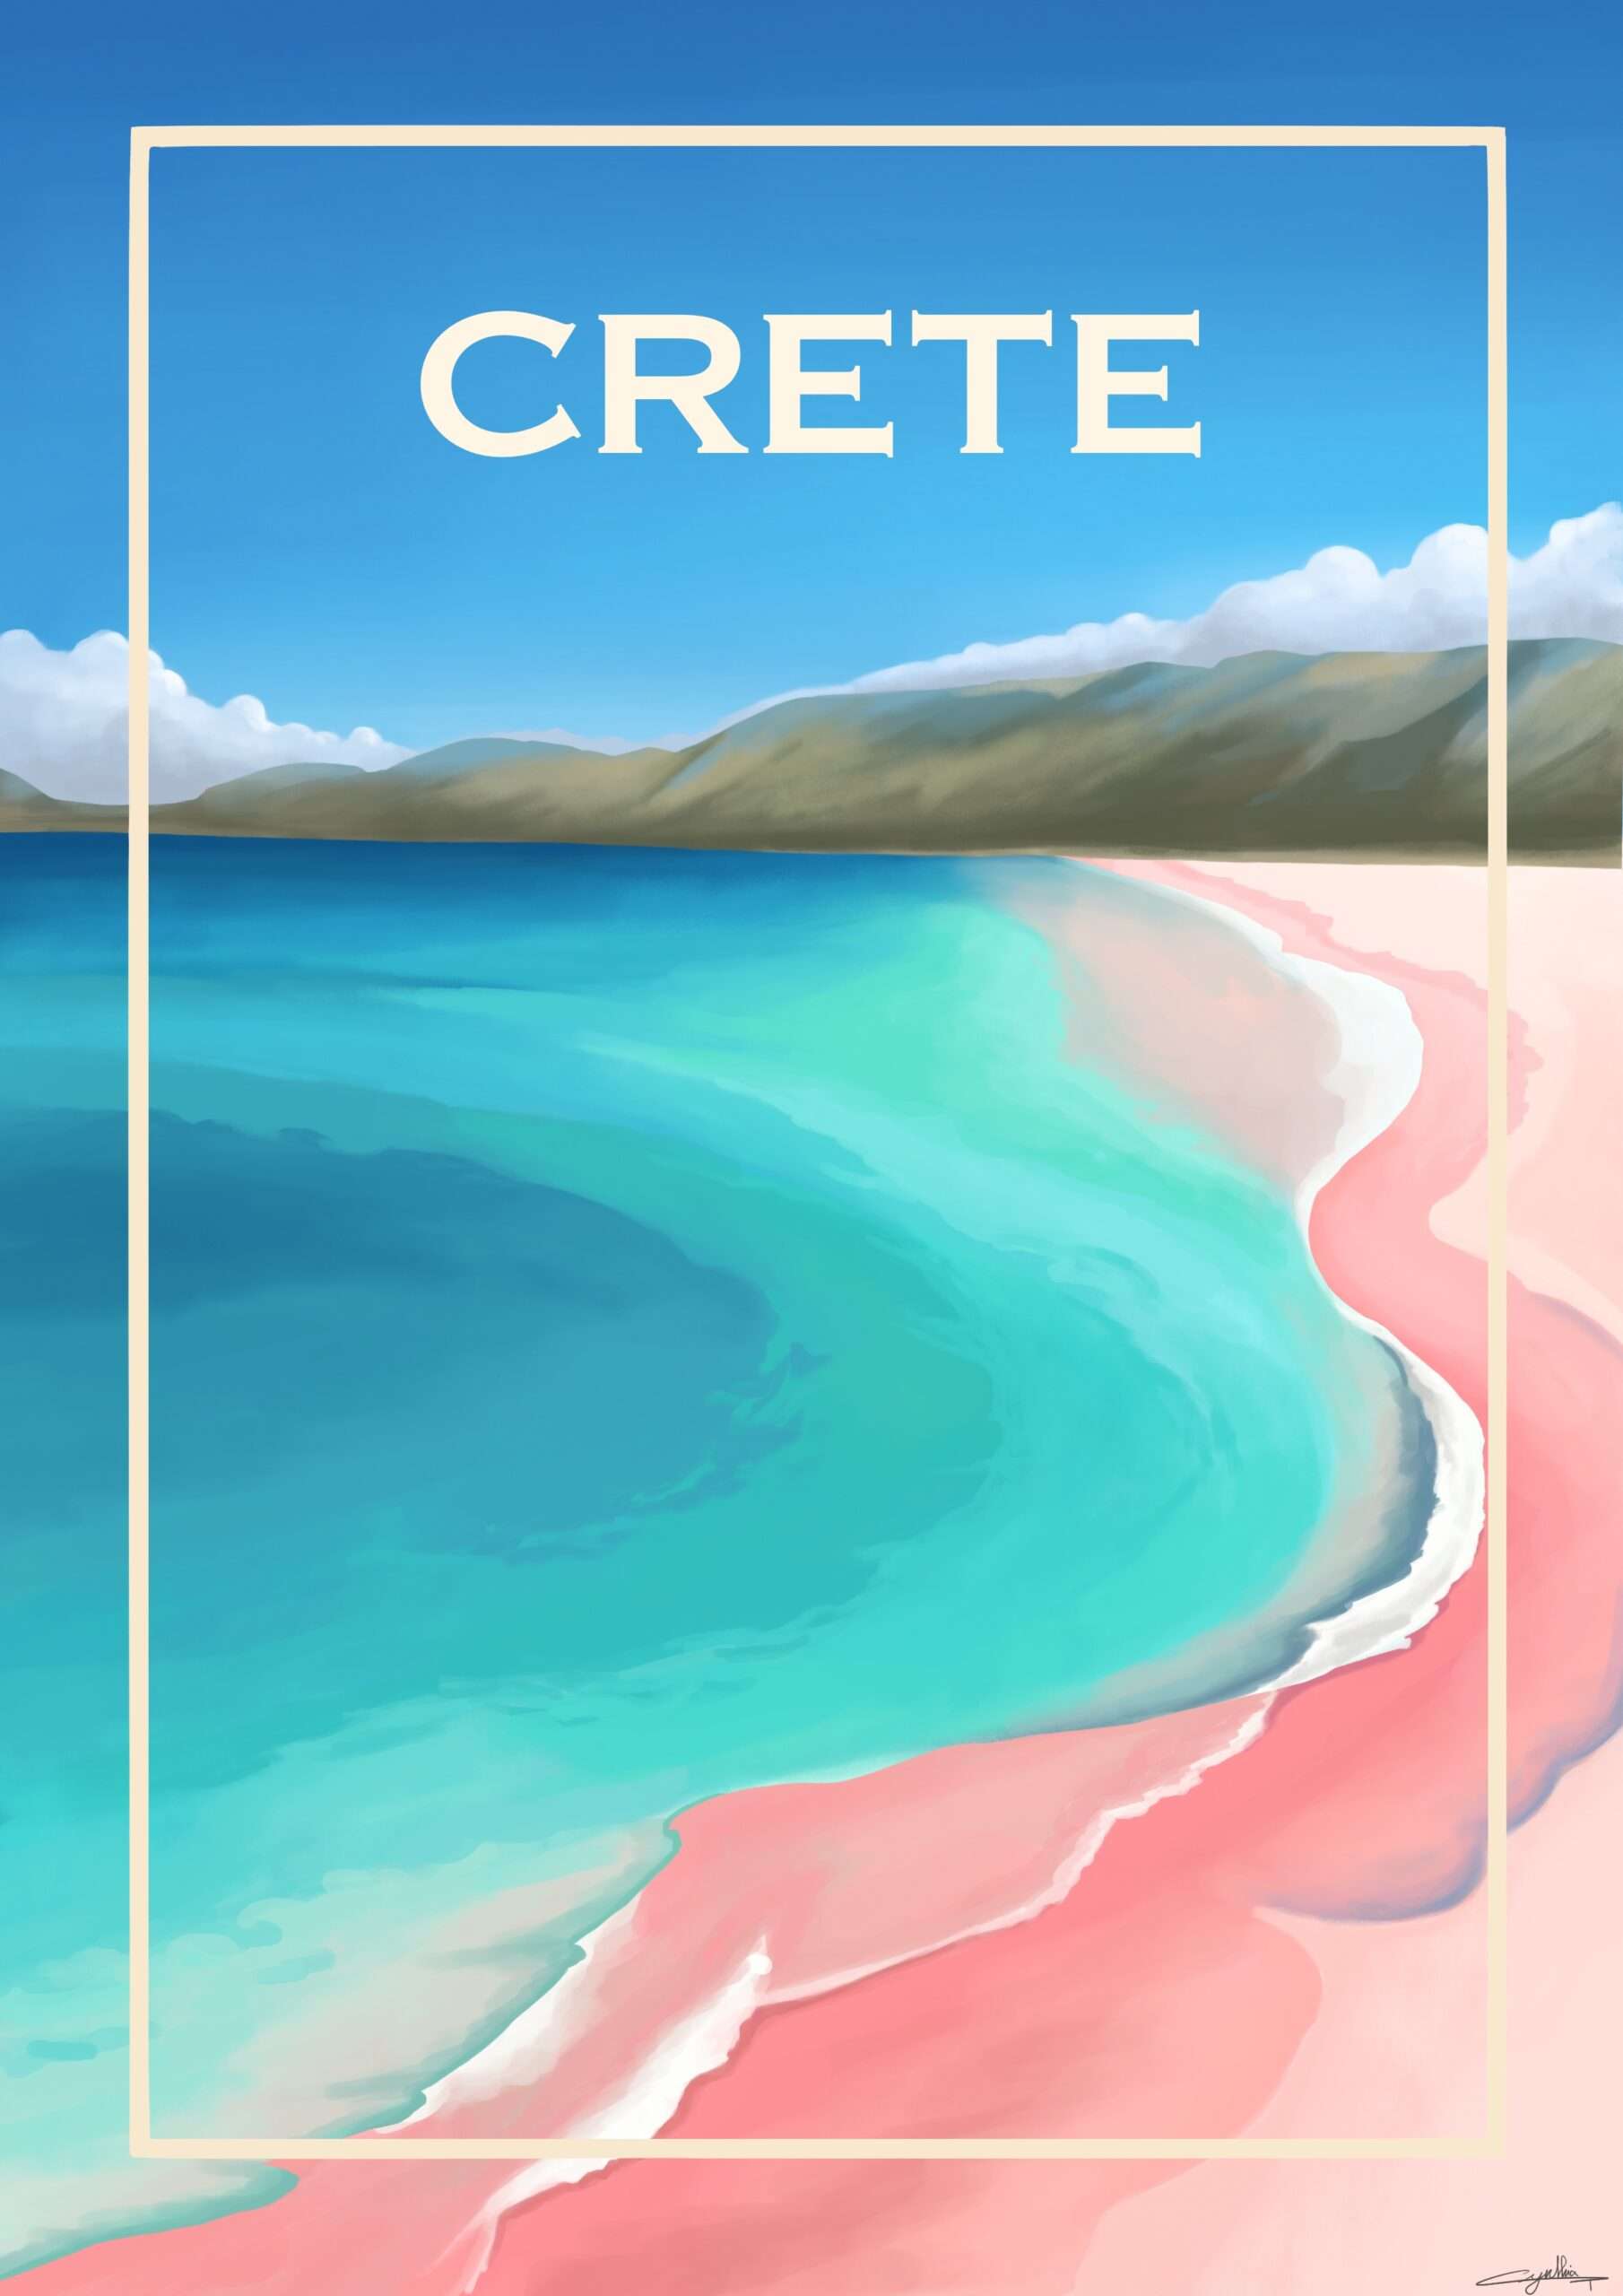 Crète, plage sable rose à Chania, illustration fait par l’illustratrice Cynthia Artstudio. Crete